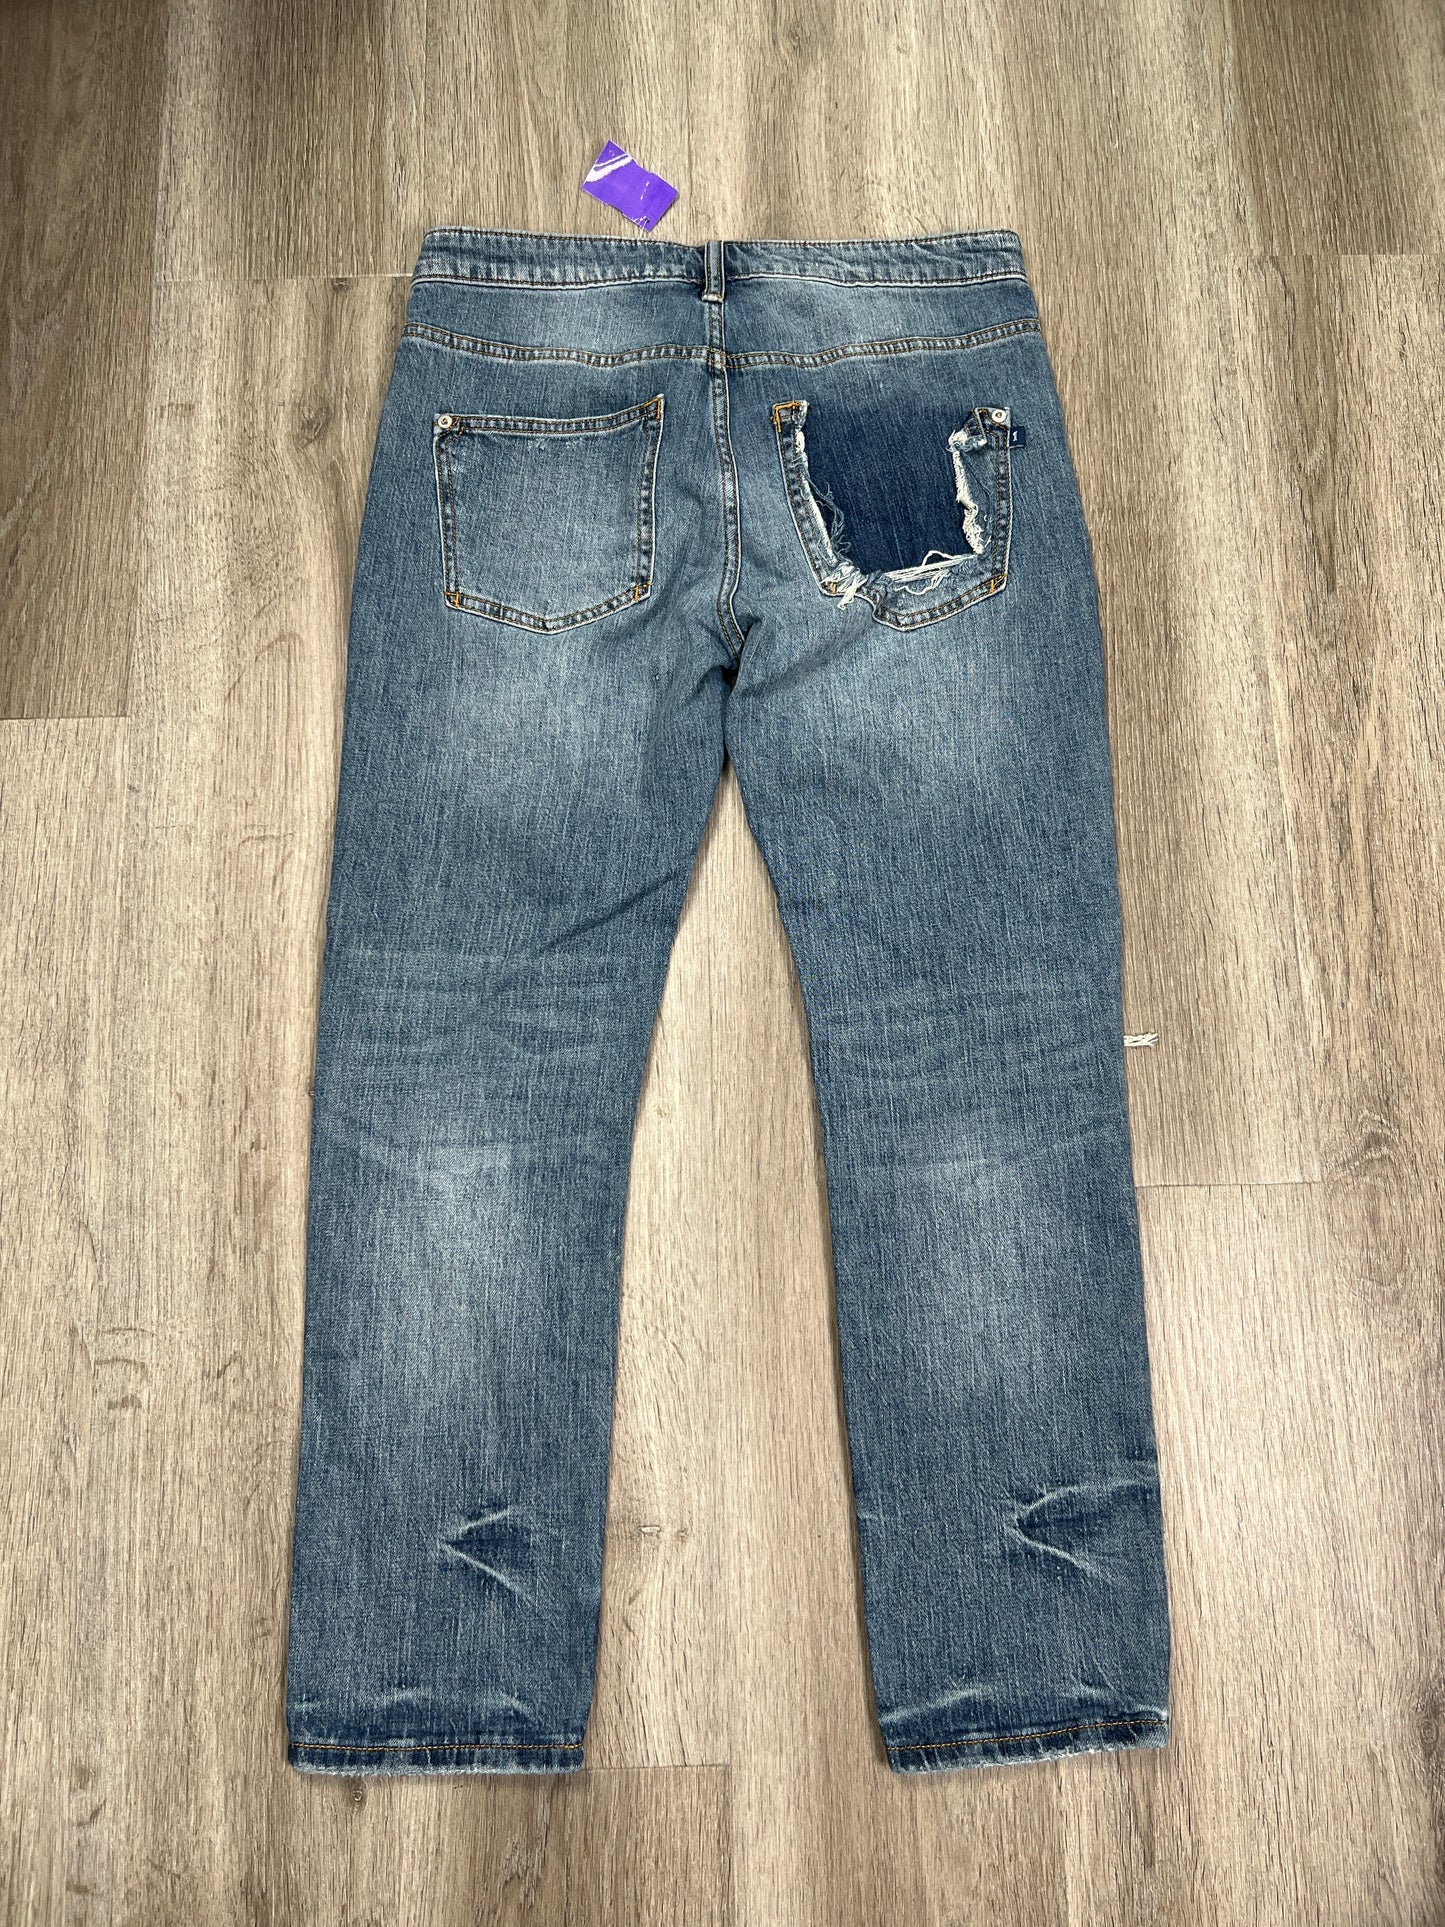 Blue Denim Jeans Cropped Pilcro, Size 2